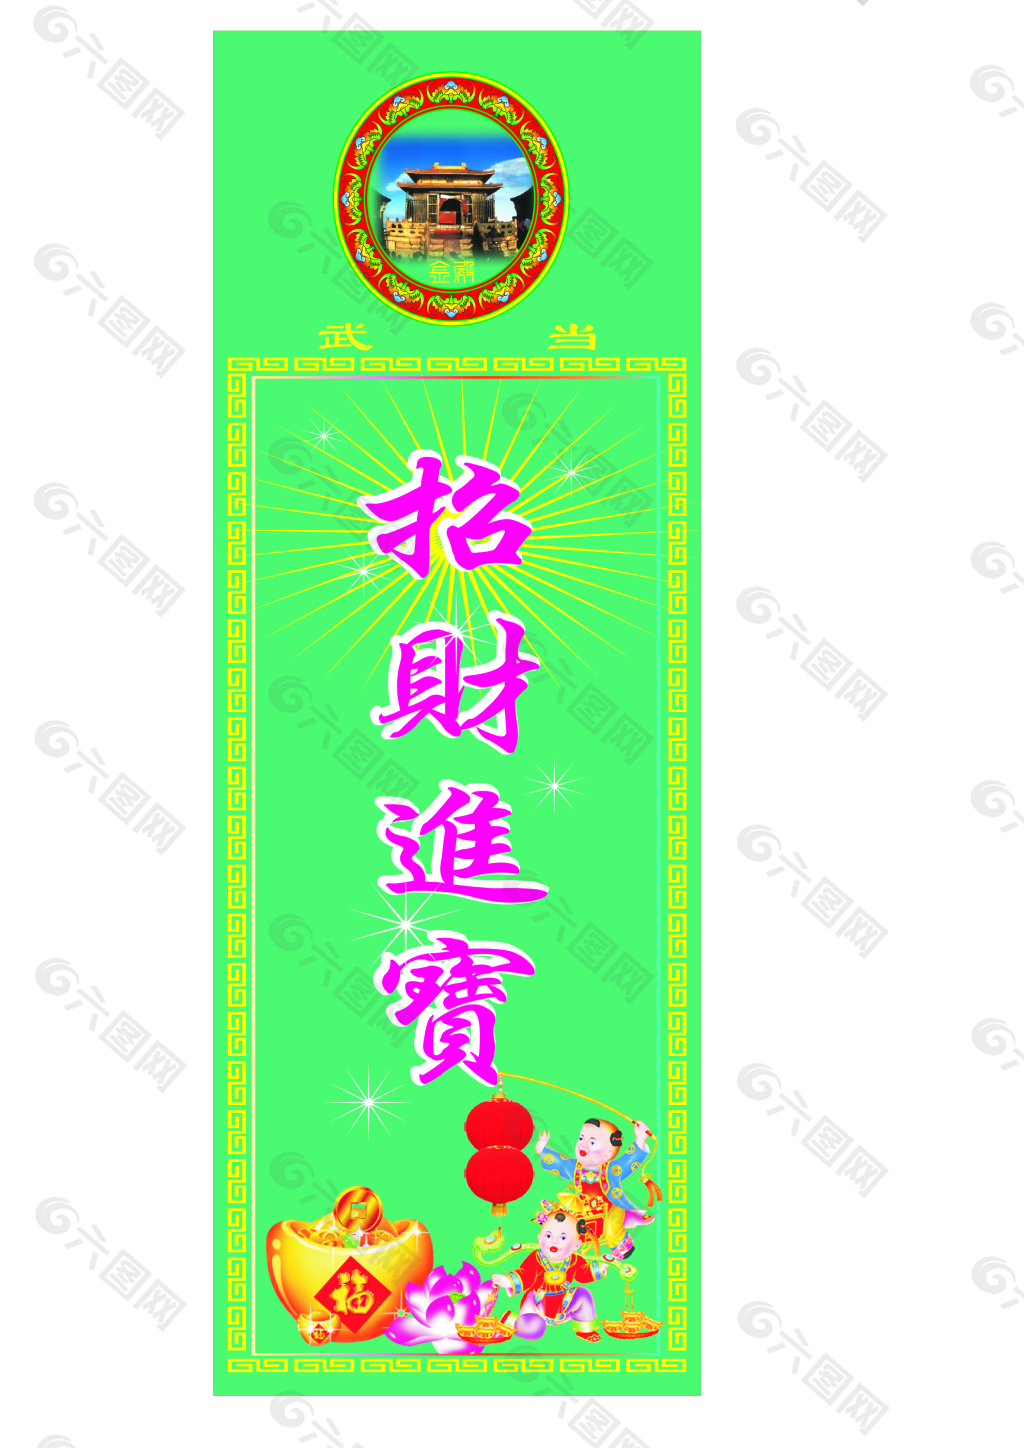 文化祝福 「六字大明咒」999.9黃金手鍊 | 周生生(Chow Sang Sang Jewellery)官方網上珠寶店